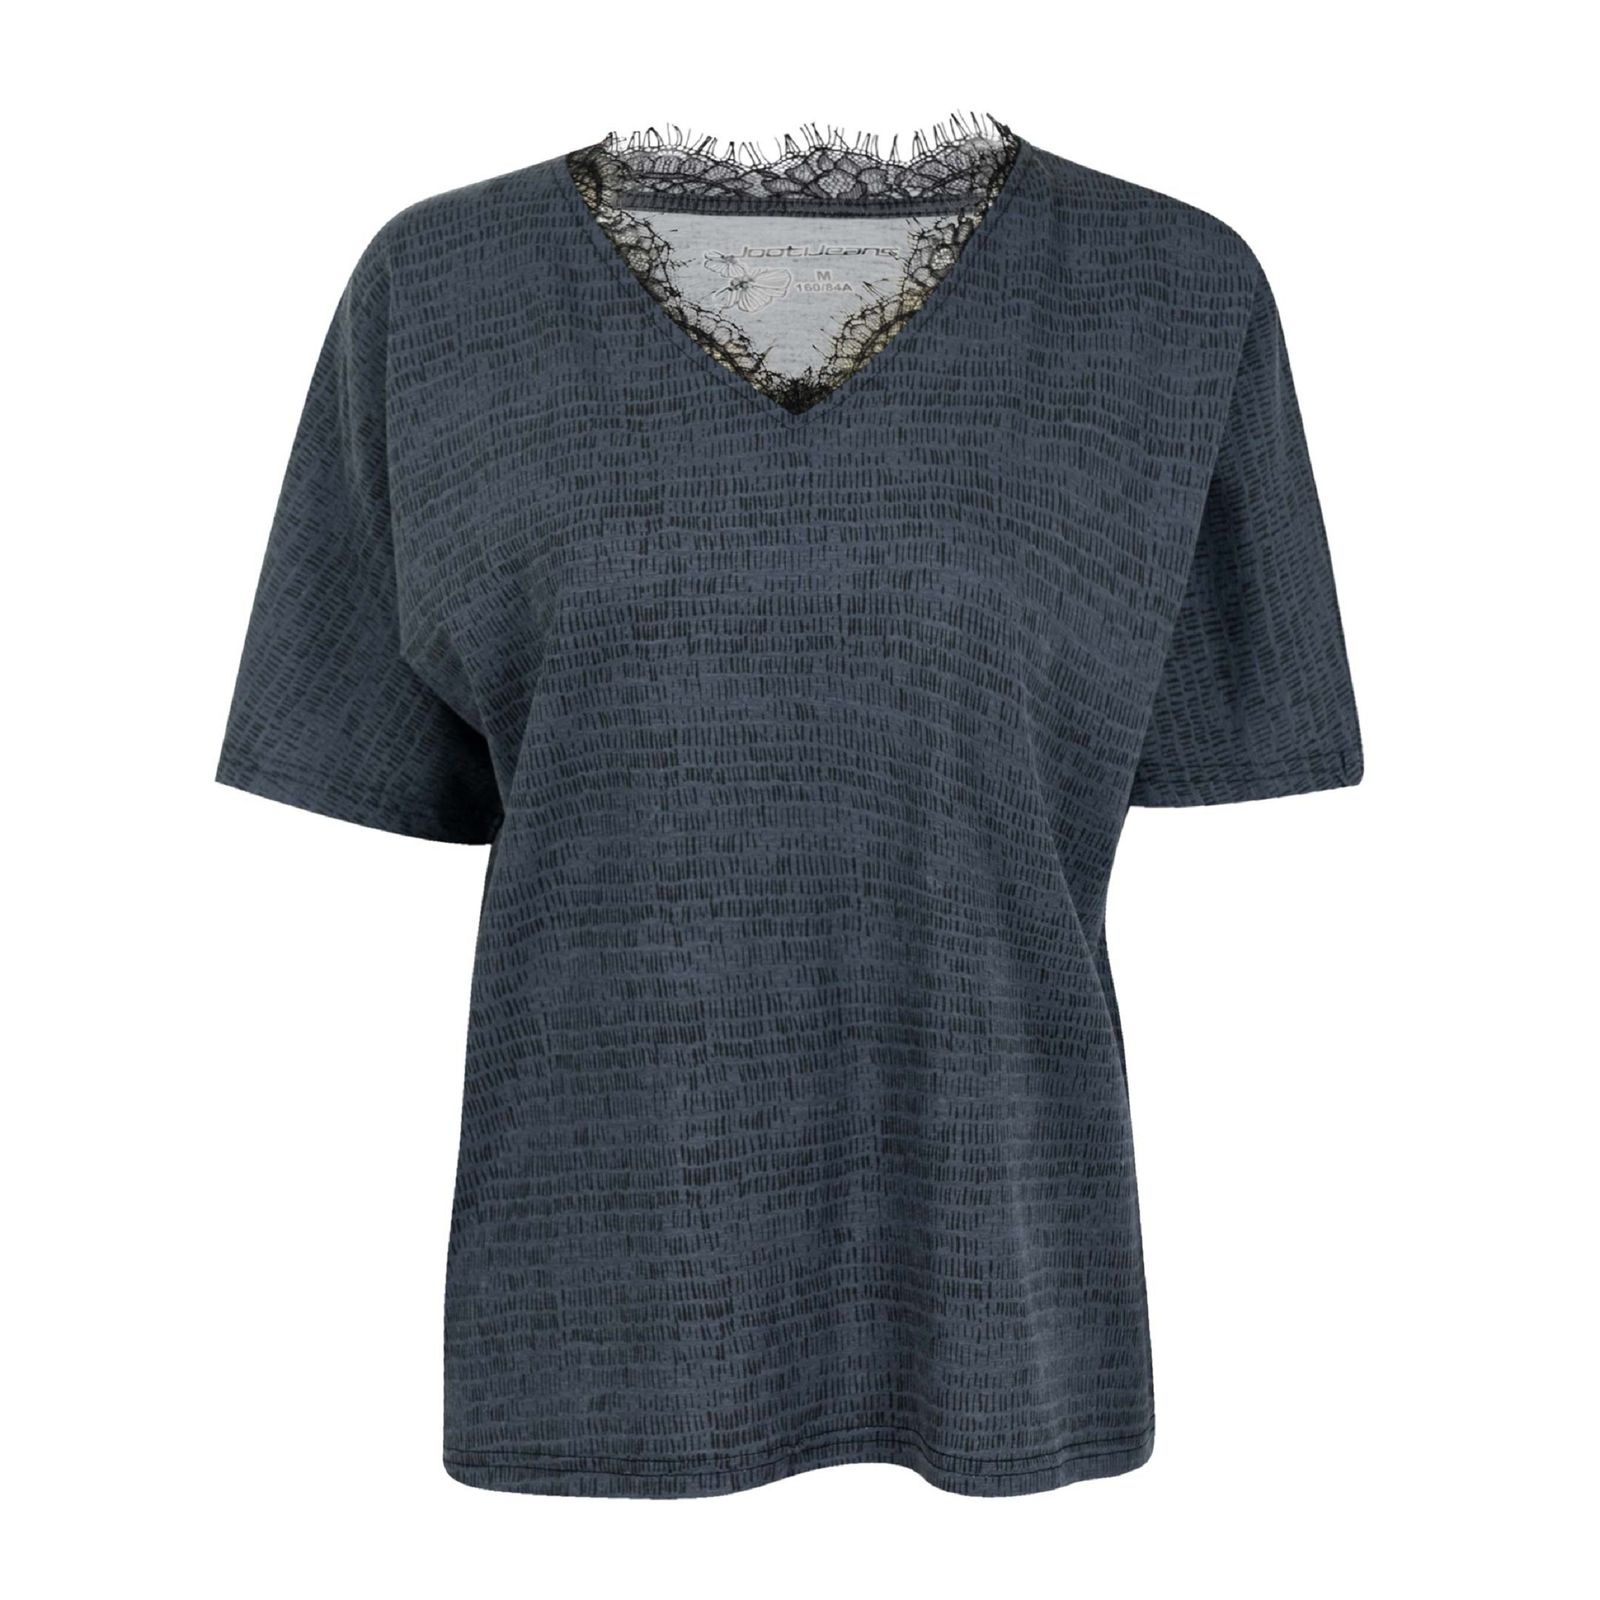 تی شرت آستین کوتاه زنانه جوتی جینز مدل یقه هفت کد 1551215 رنگ طوسی تیره -  - 1